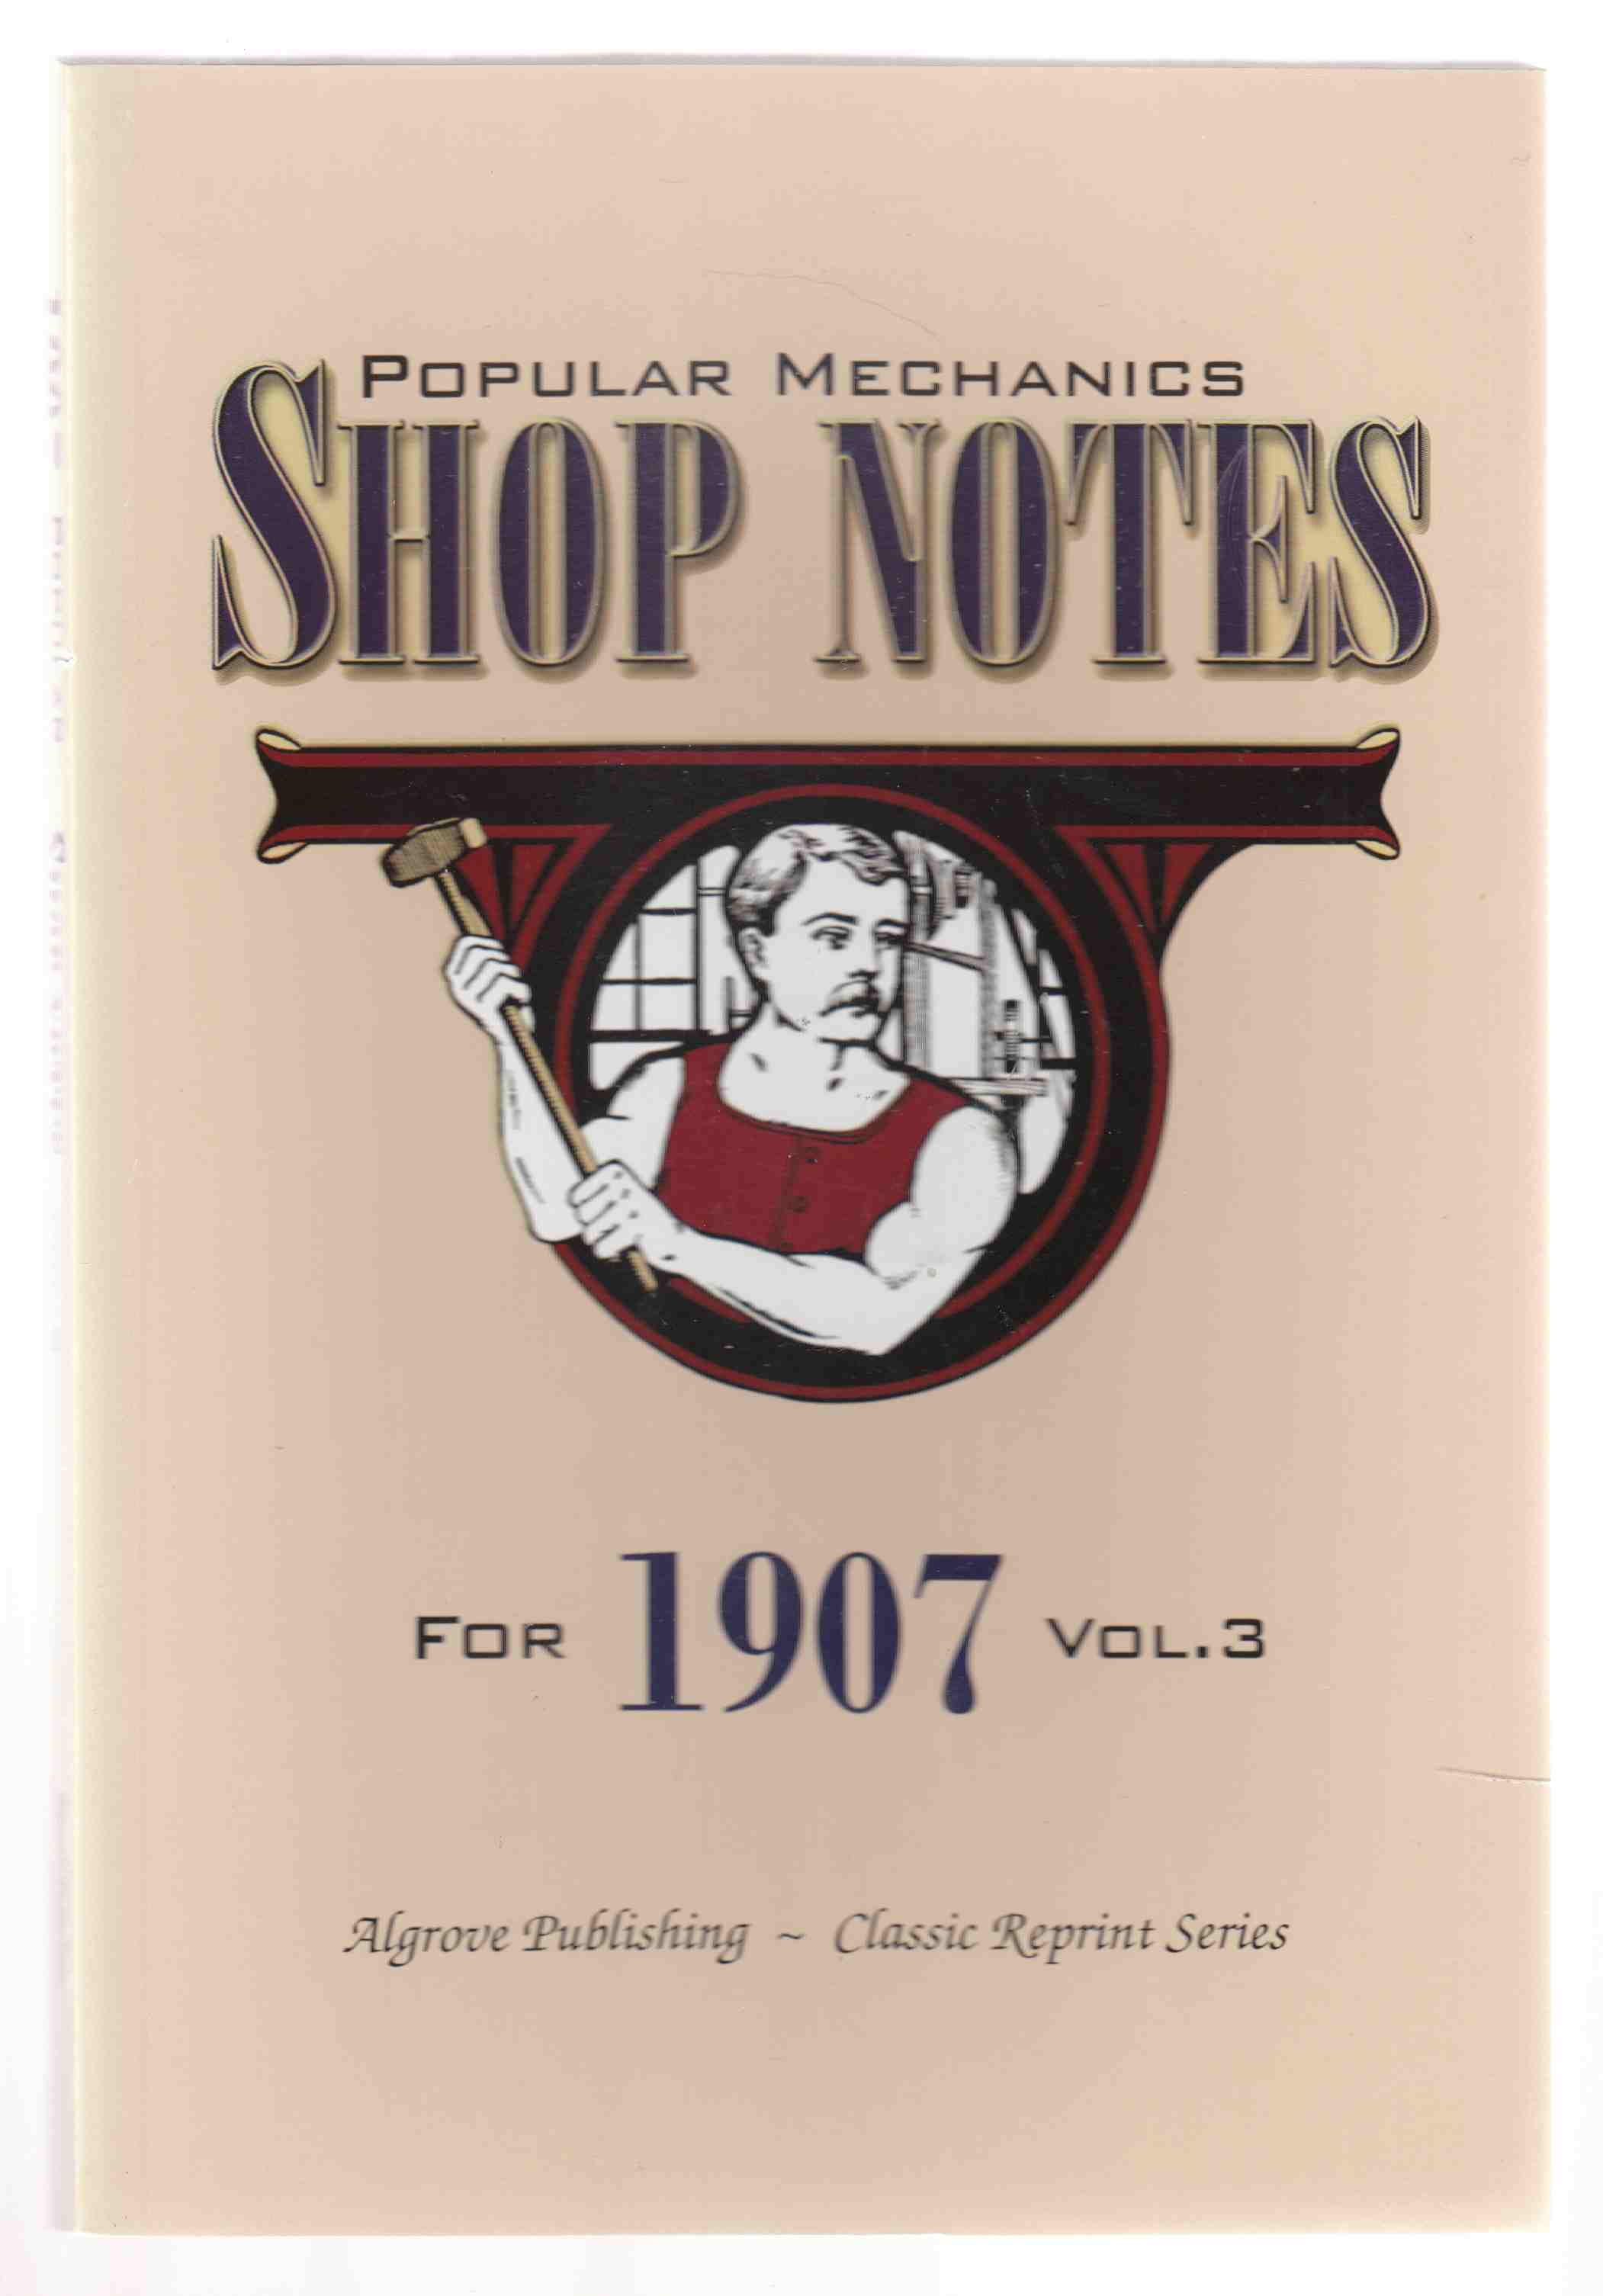 Popular Mechanics Shop Notes for 1908 Vol. 4.